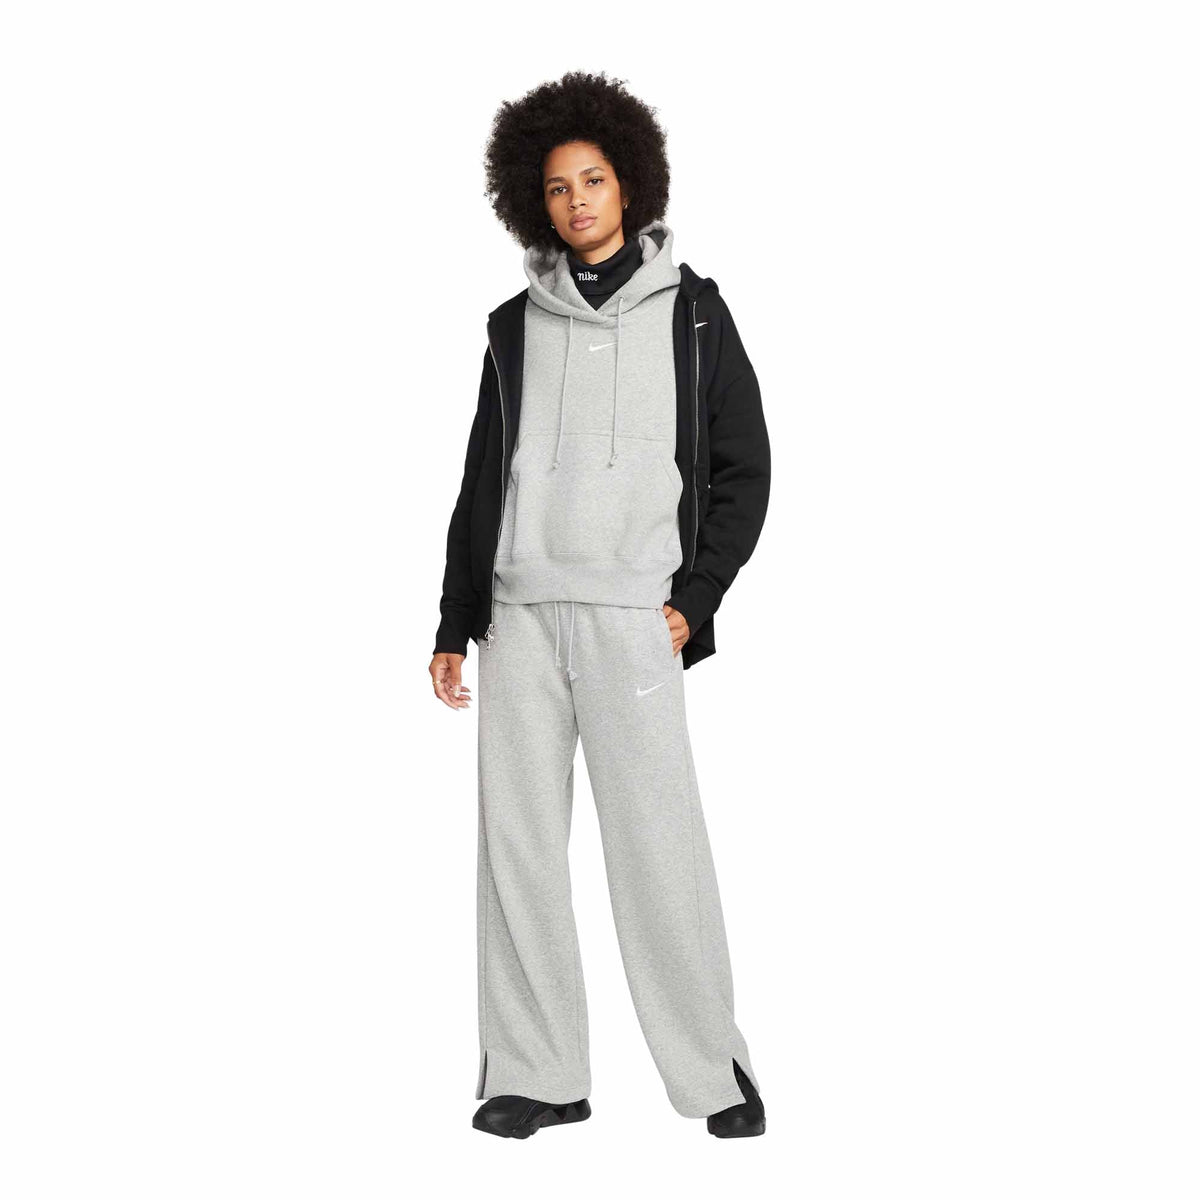 Nike Sportswear Phoenix Women's Wide Leg Fleece Pants Gray DQ5615